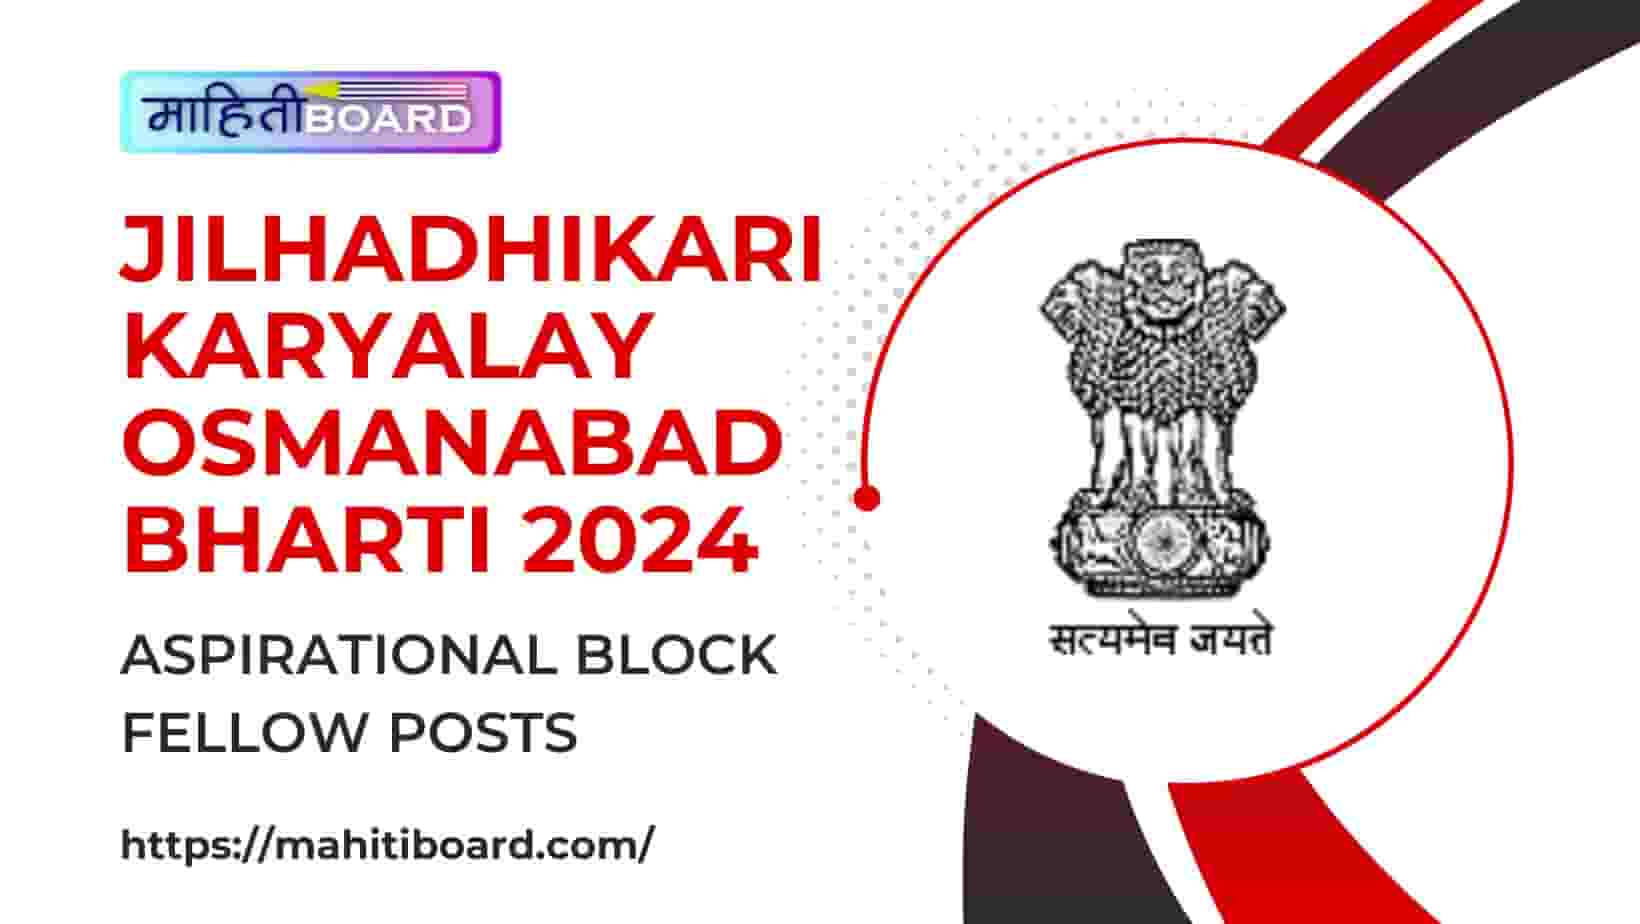 Jilhadhikari Karyalay Osmanabad Bharti 2024